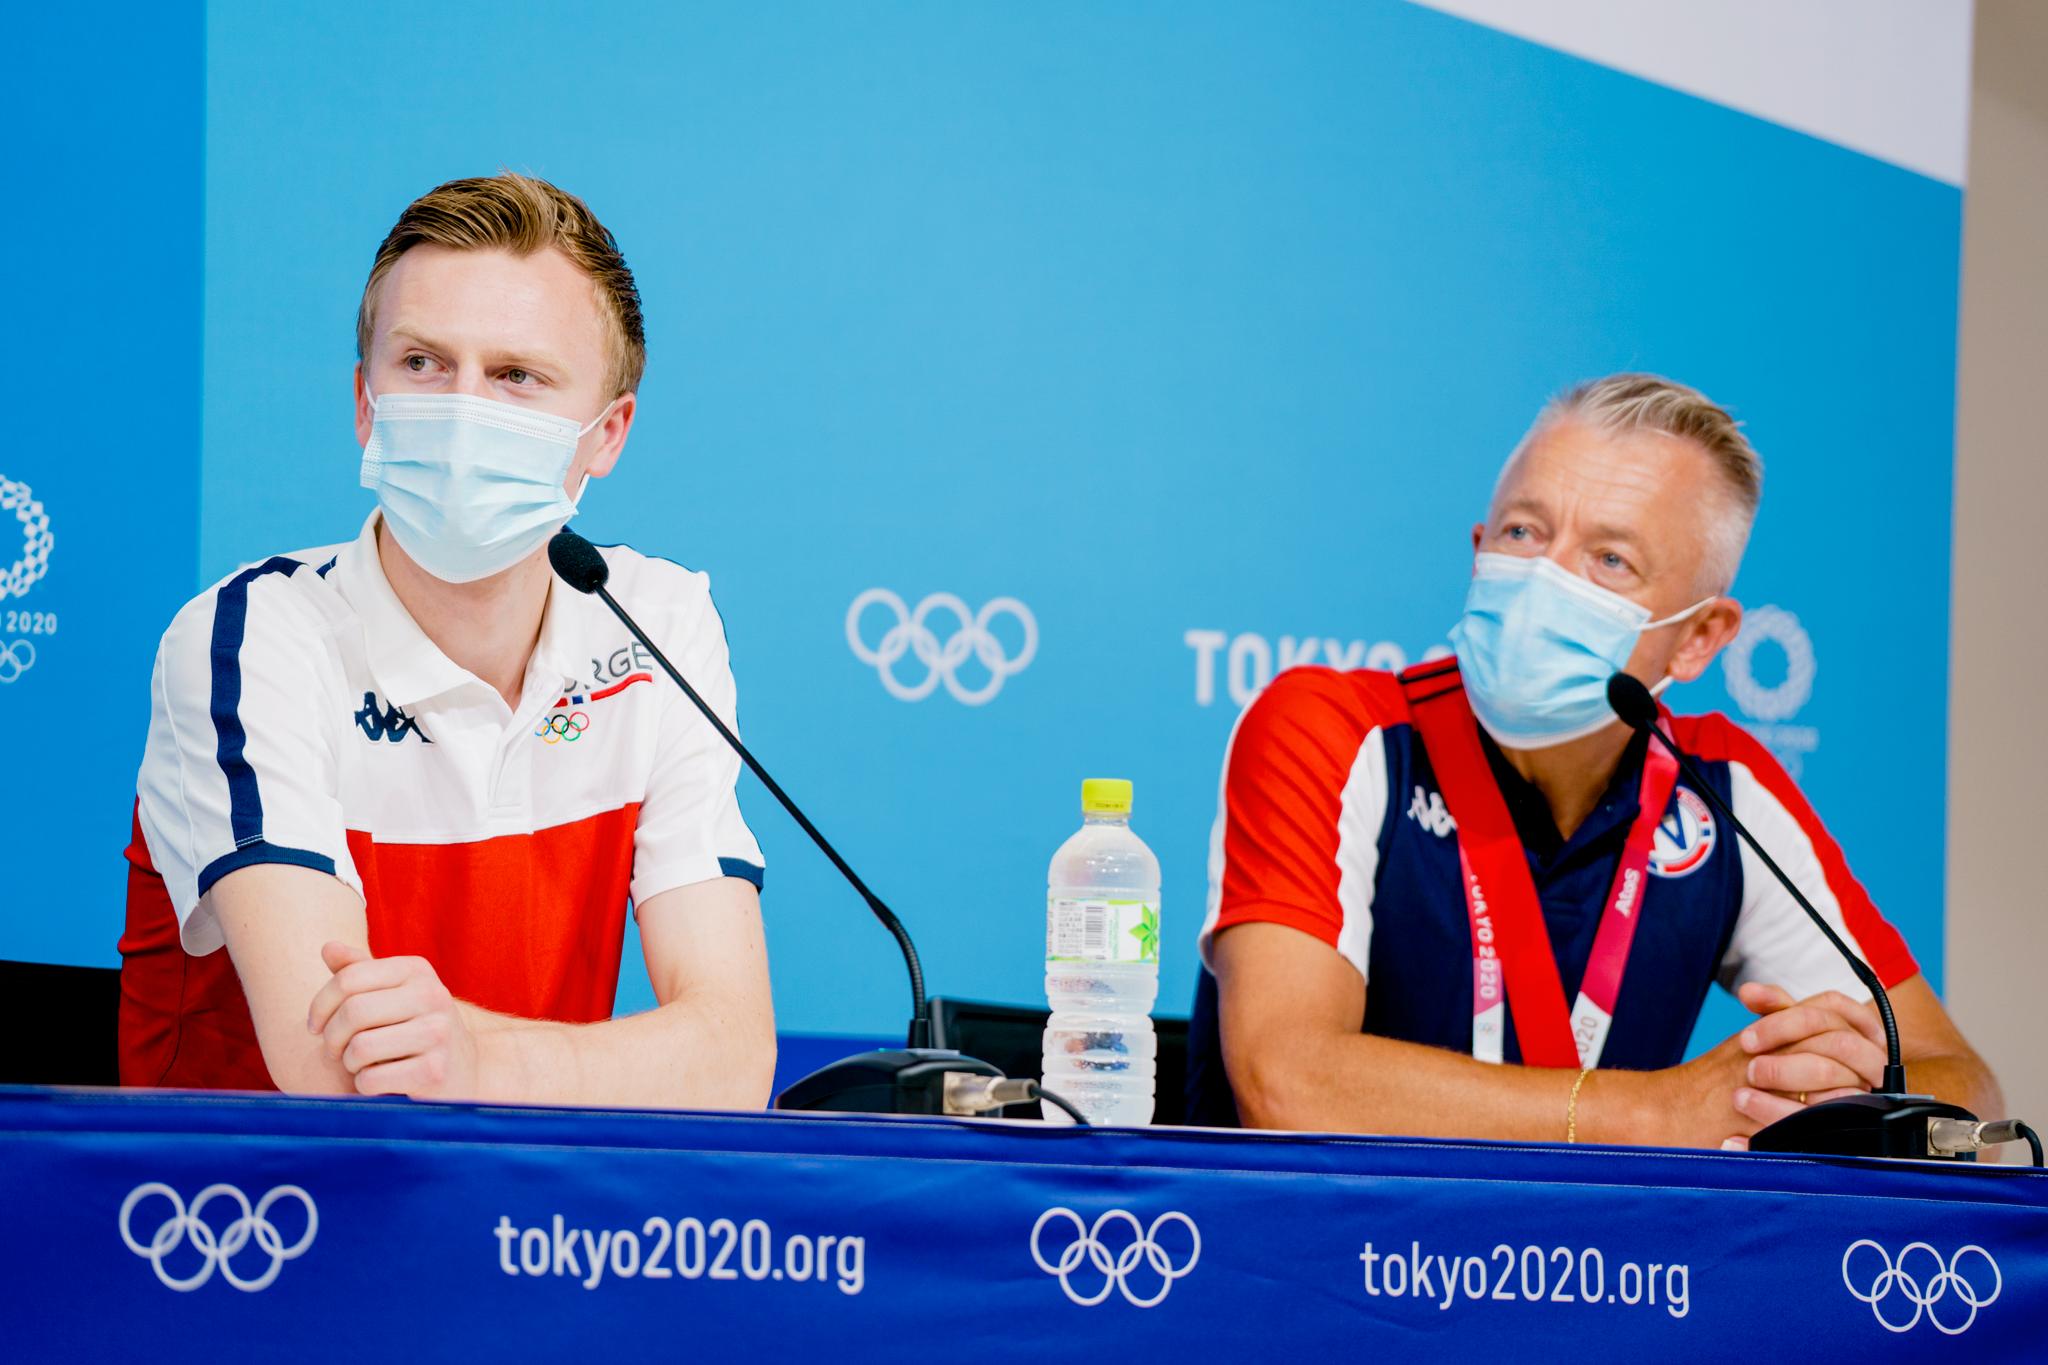 SAMARBEIDER: Narve Gilje Nordås og Gjert Ingebrigtsen under en pressekonferanse i deltagerlandsbyen i OL i Tokyo i august i fjor. 